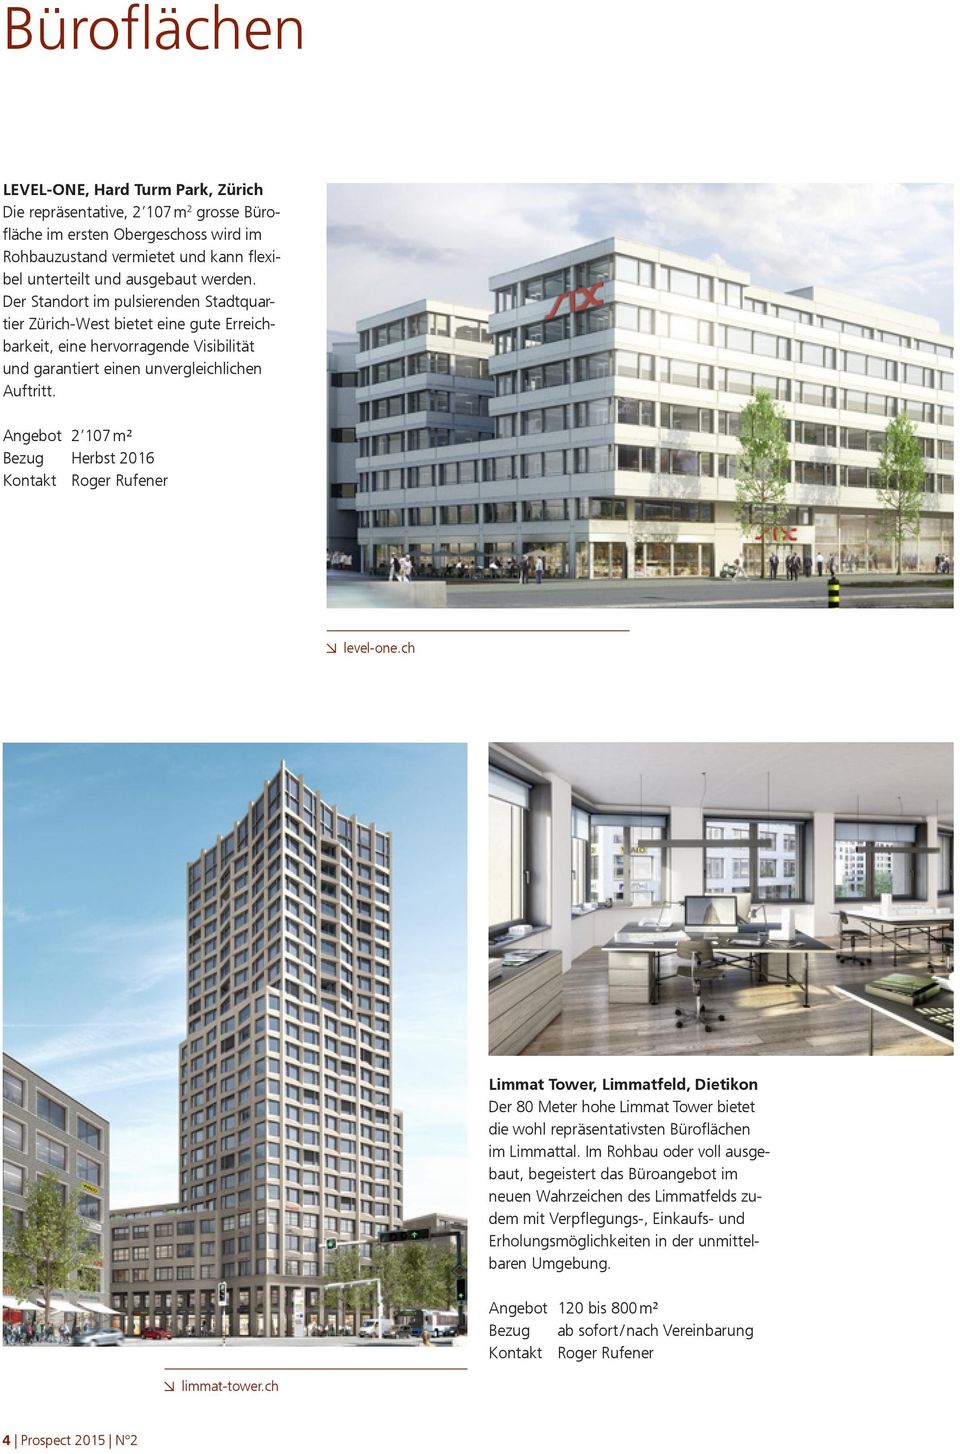 Angebot 2 107 m² Bezug Herbst 2016 level-one.ch Limmat Tower, Limmatfeld, Dietikon Der 80 Meter hohe Limmat Tower bietet die wohl repräsentativsten Büroflächen im Limmattal.